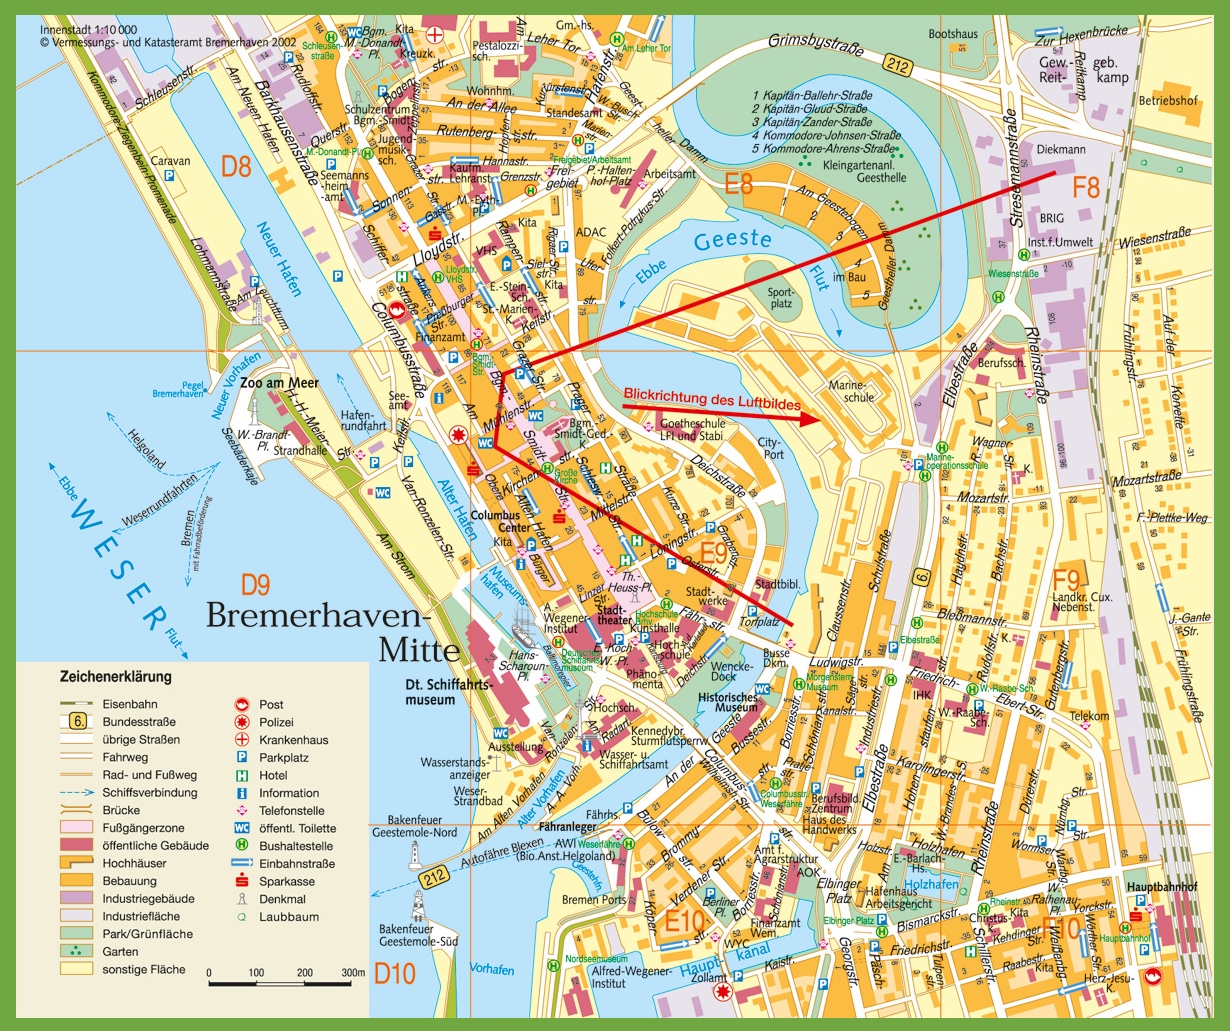 Bremerhaven city centre map